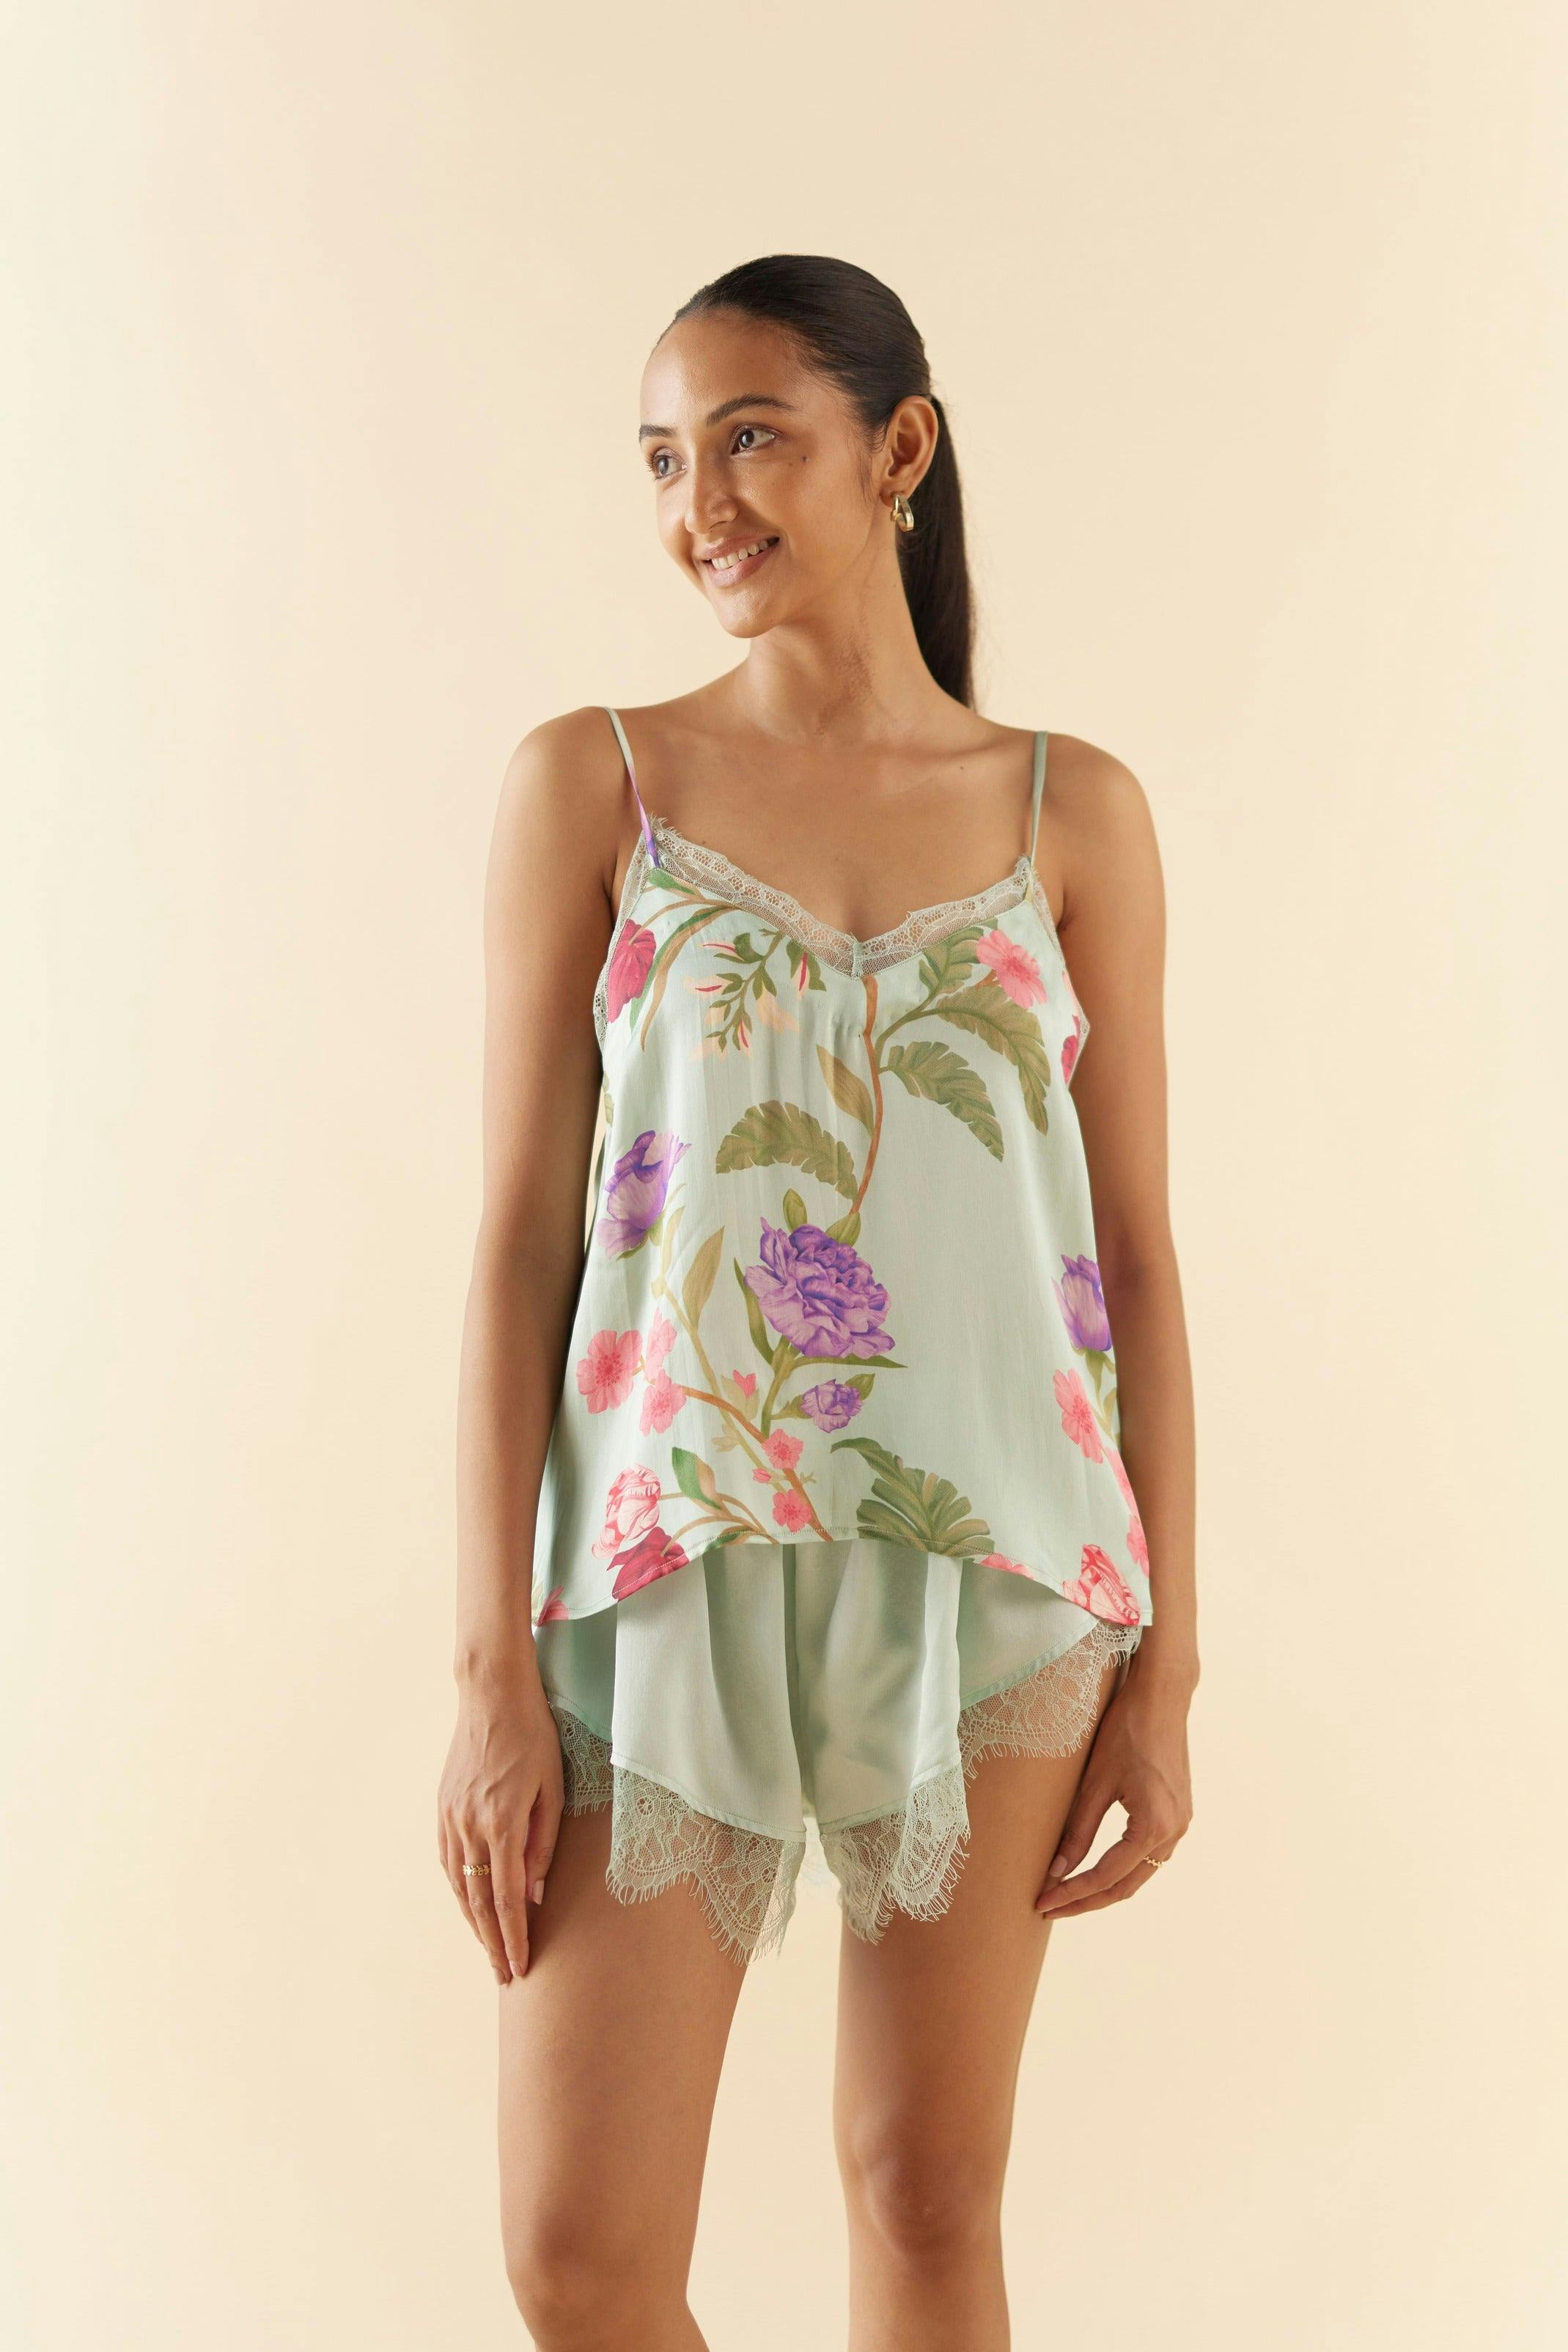 Thumbnail preview #1 for Celeste Floral Dream Lace Shorts